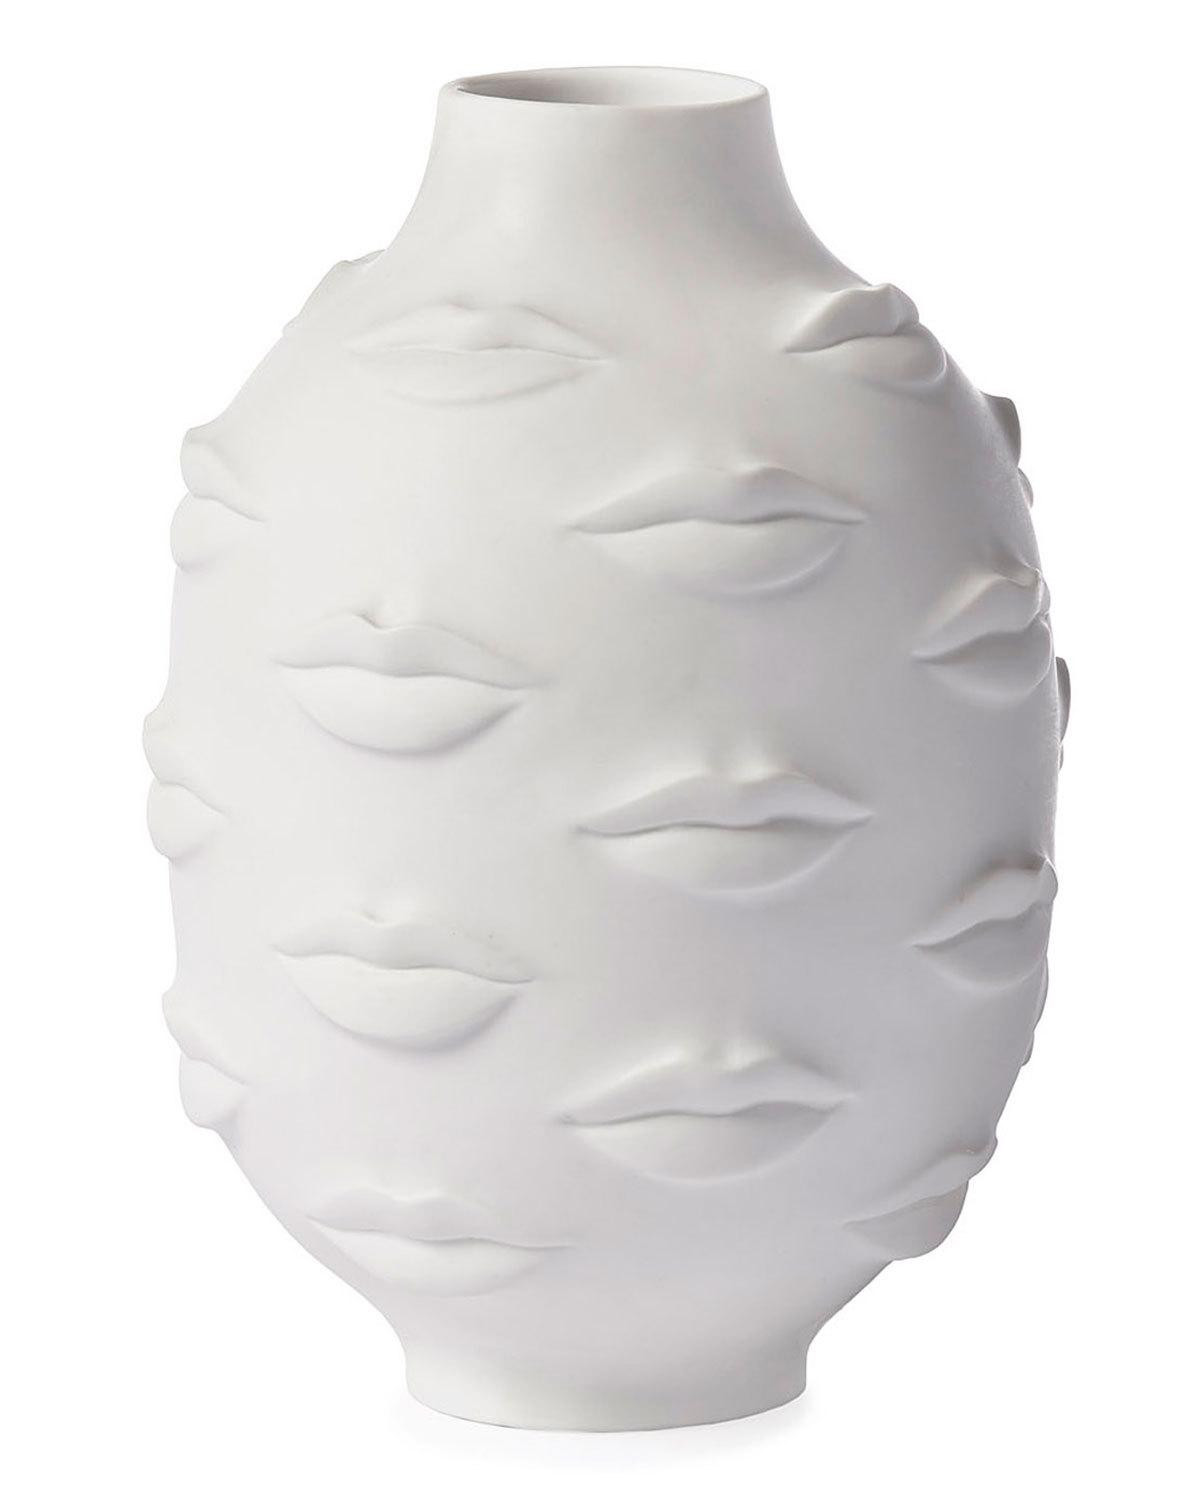 unglazed white ceramic vase of imported vase decor neiman marcus regarding quick look